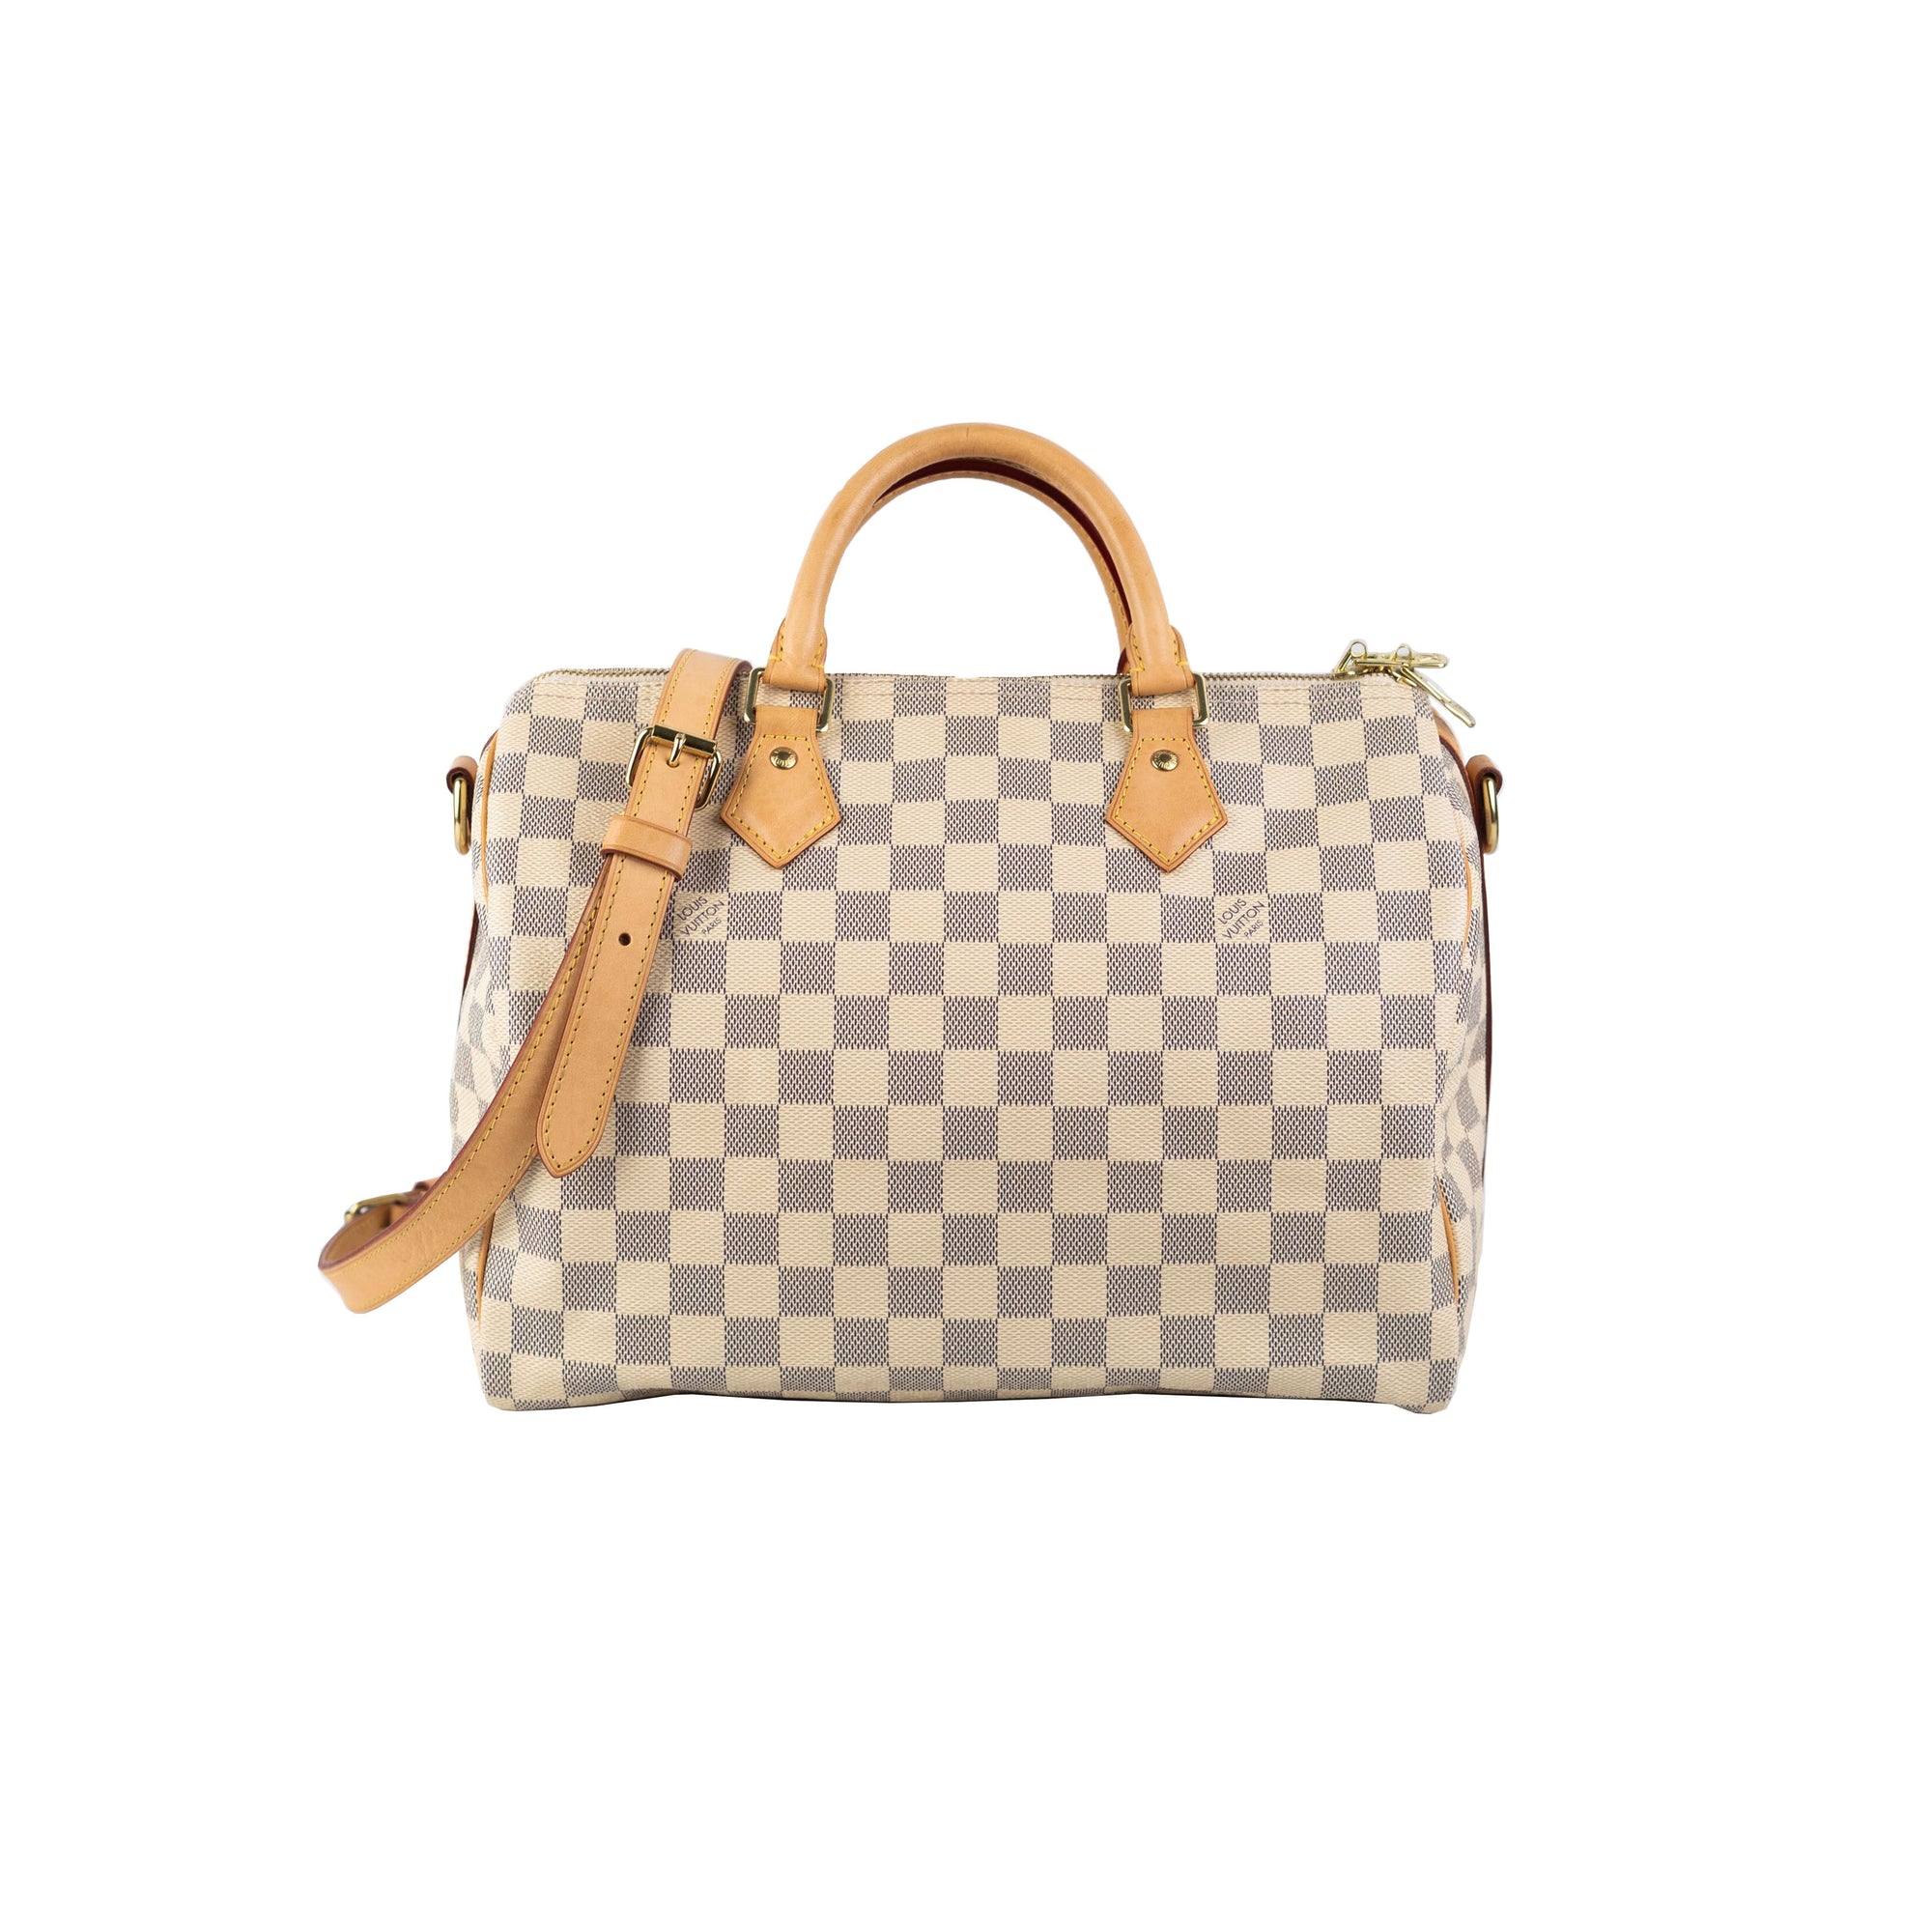 Louis Vuitton Speedy Handbag 30 checkered azure pattern Minnie